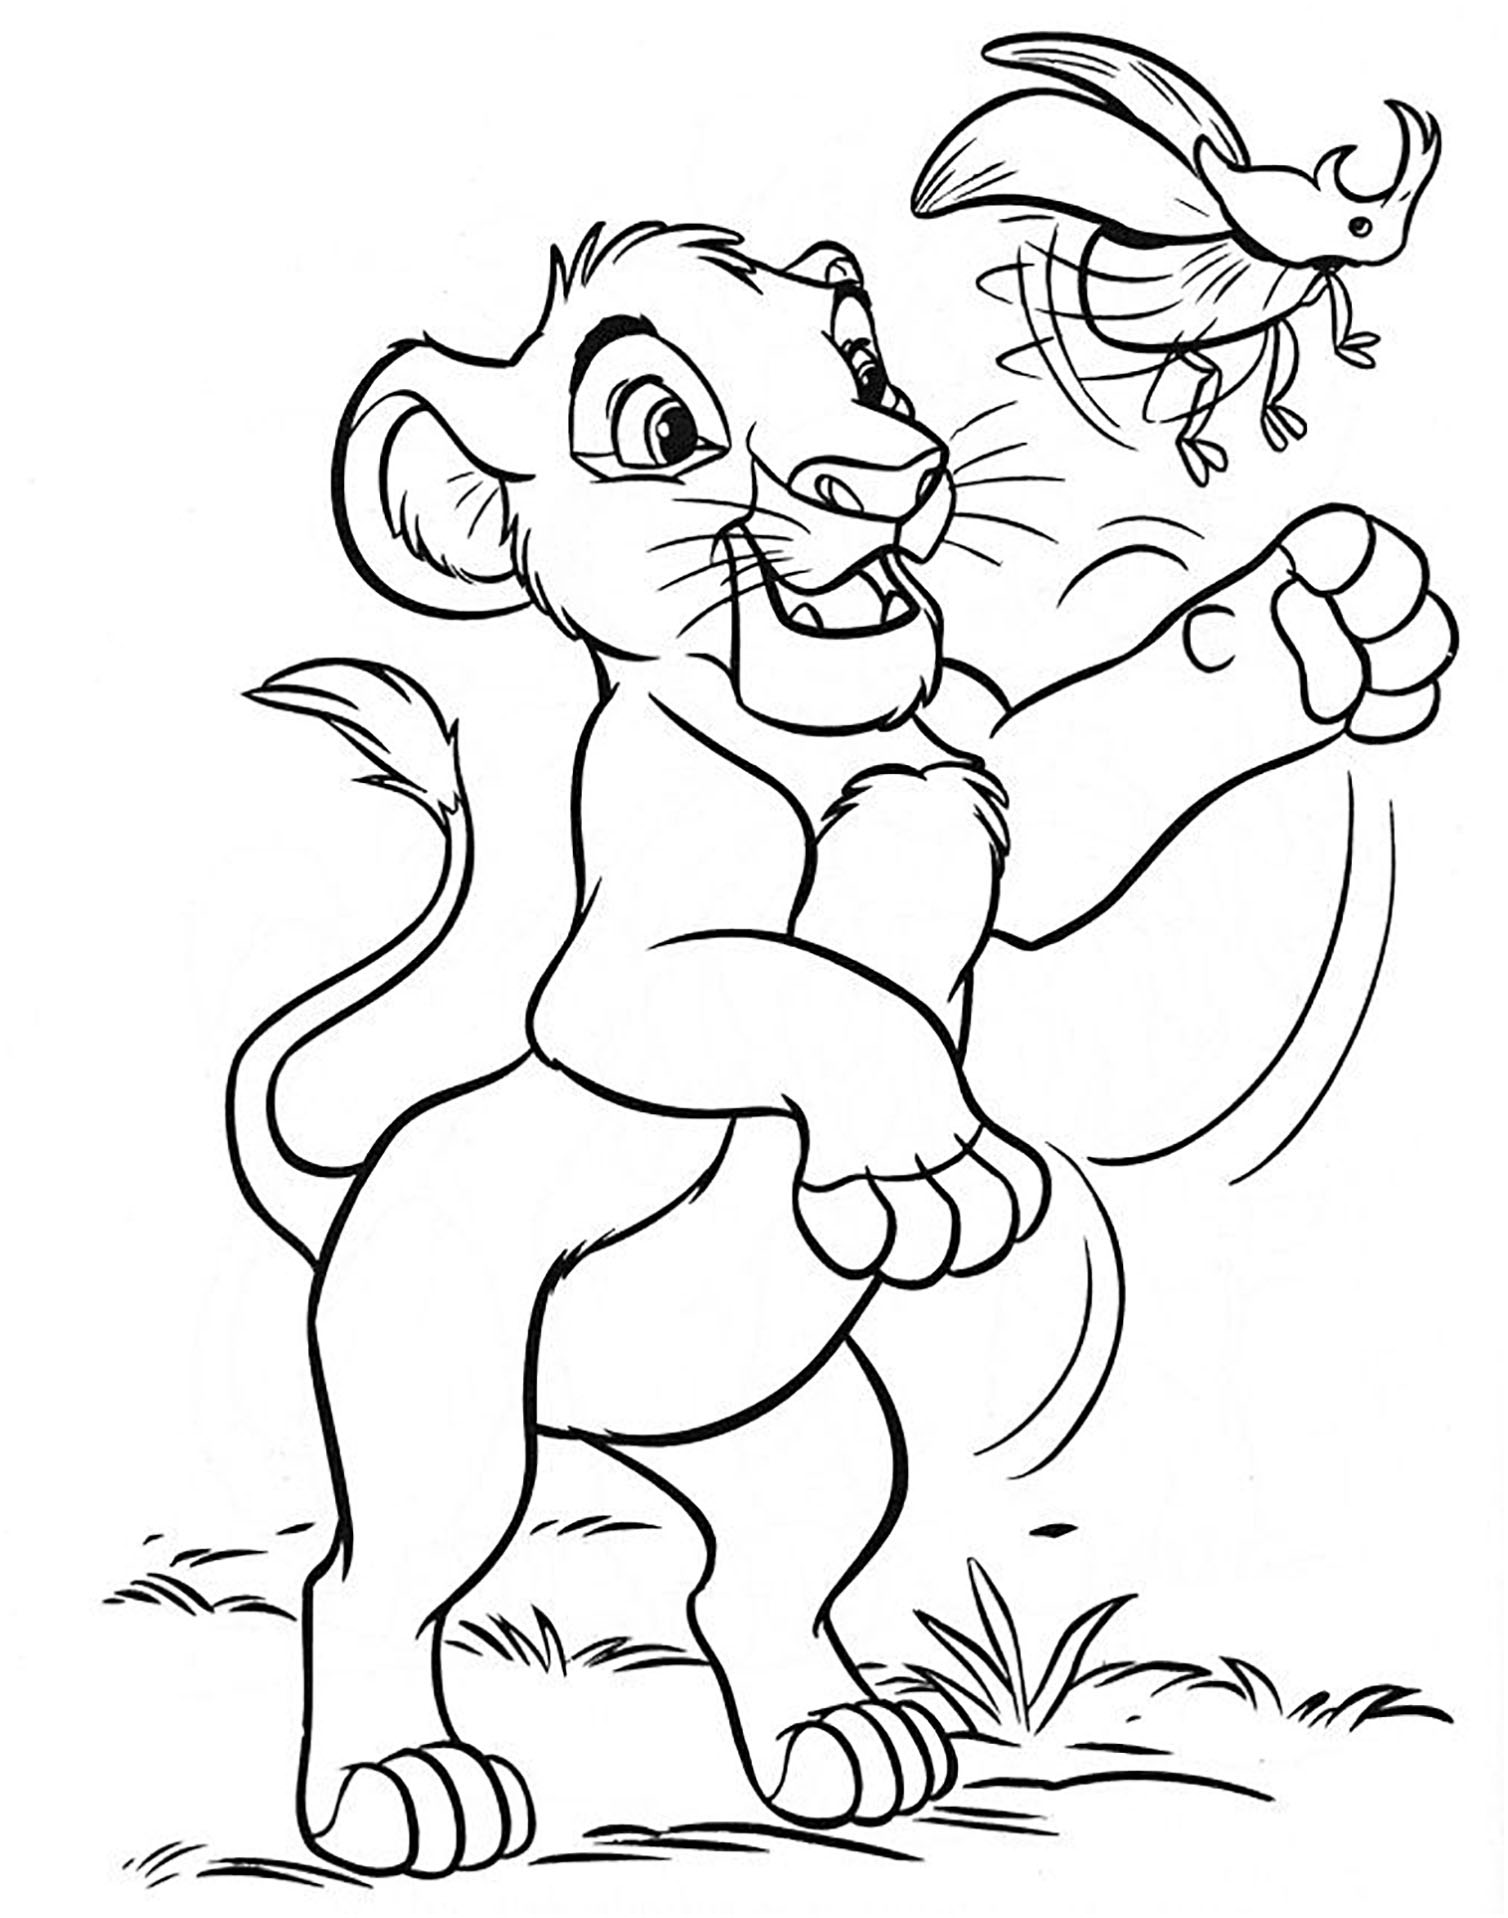 Página para colorir do filme O Rei Leão com Simba a brincar com um escaravelho